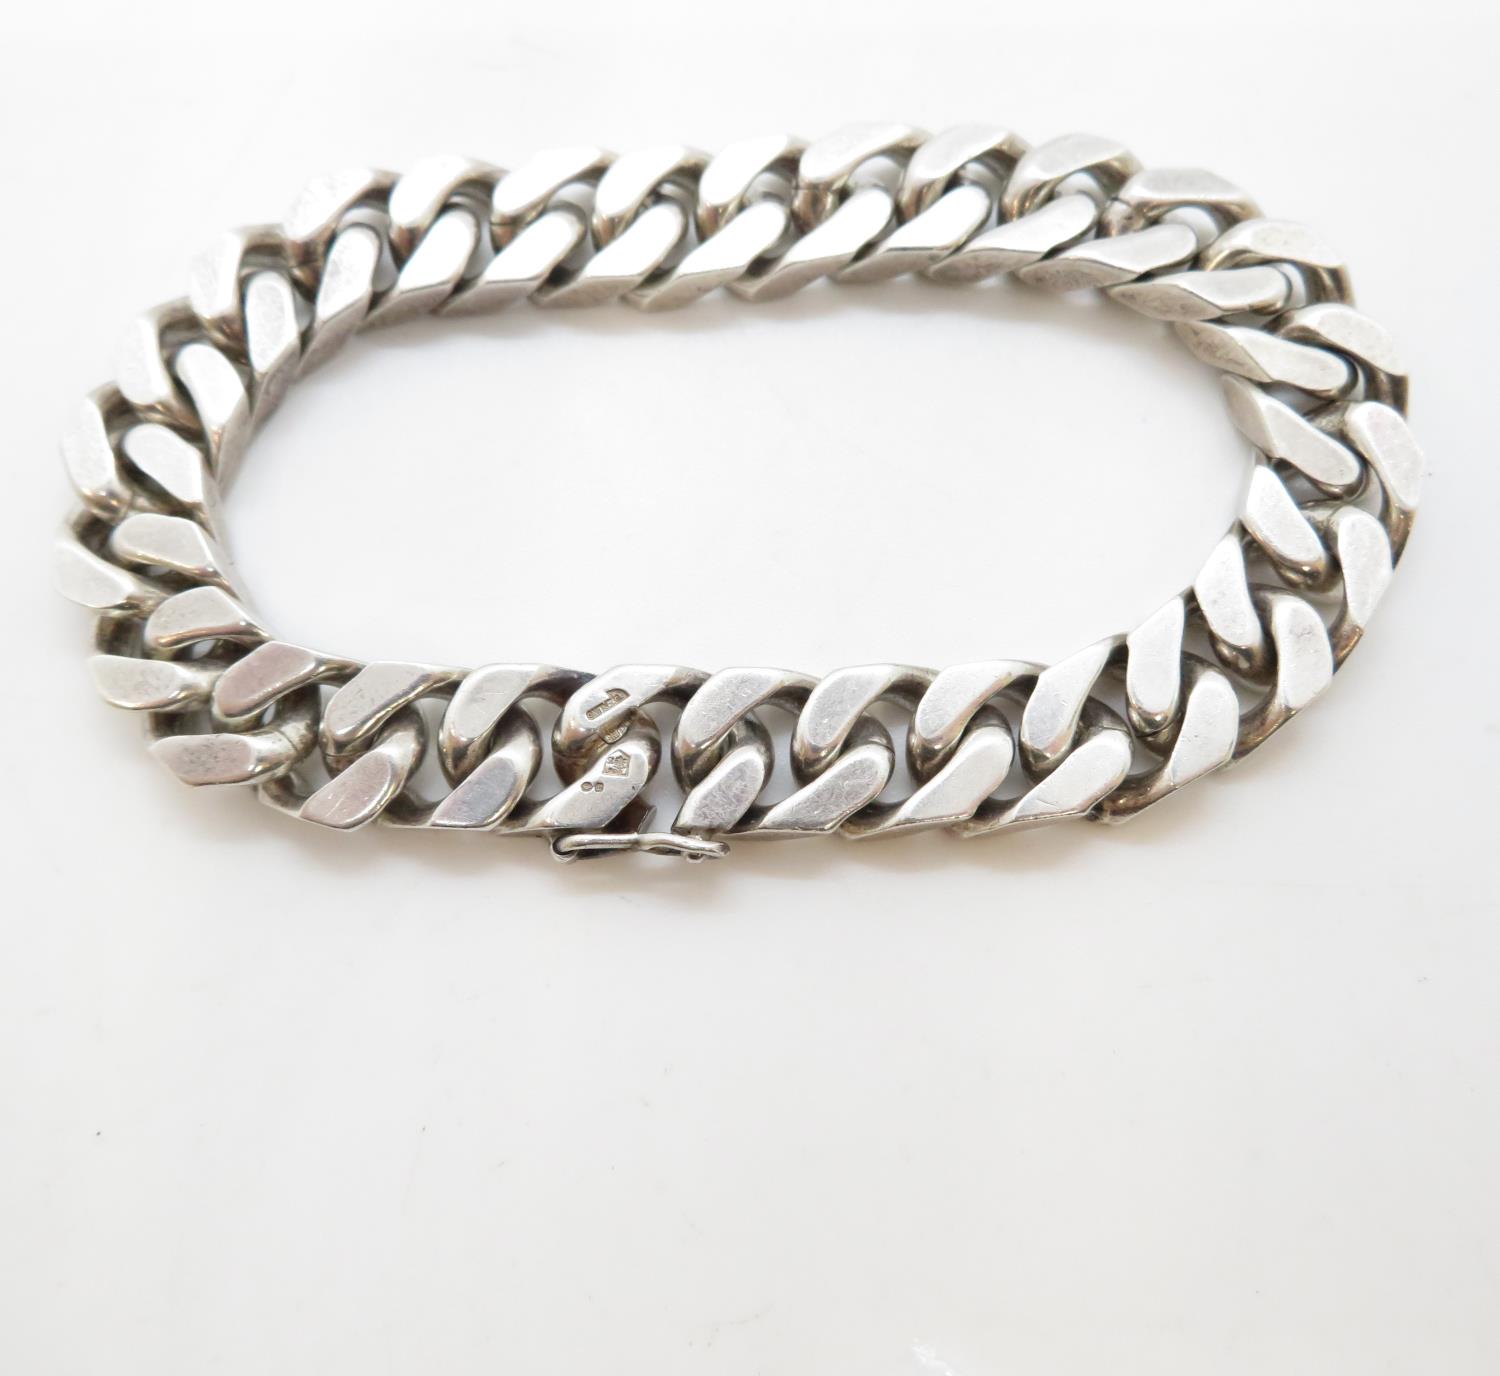 Heavy silver bracelet 8.75" long 66g